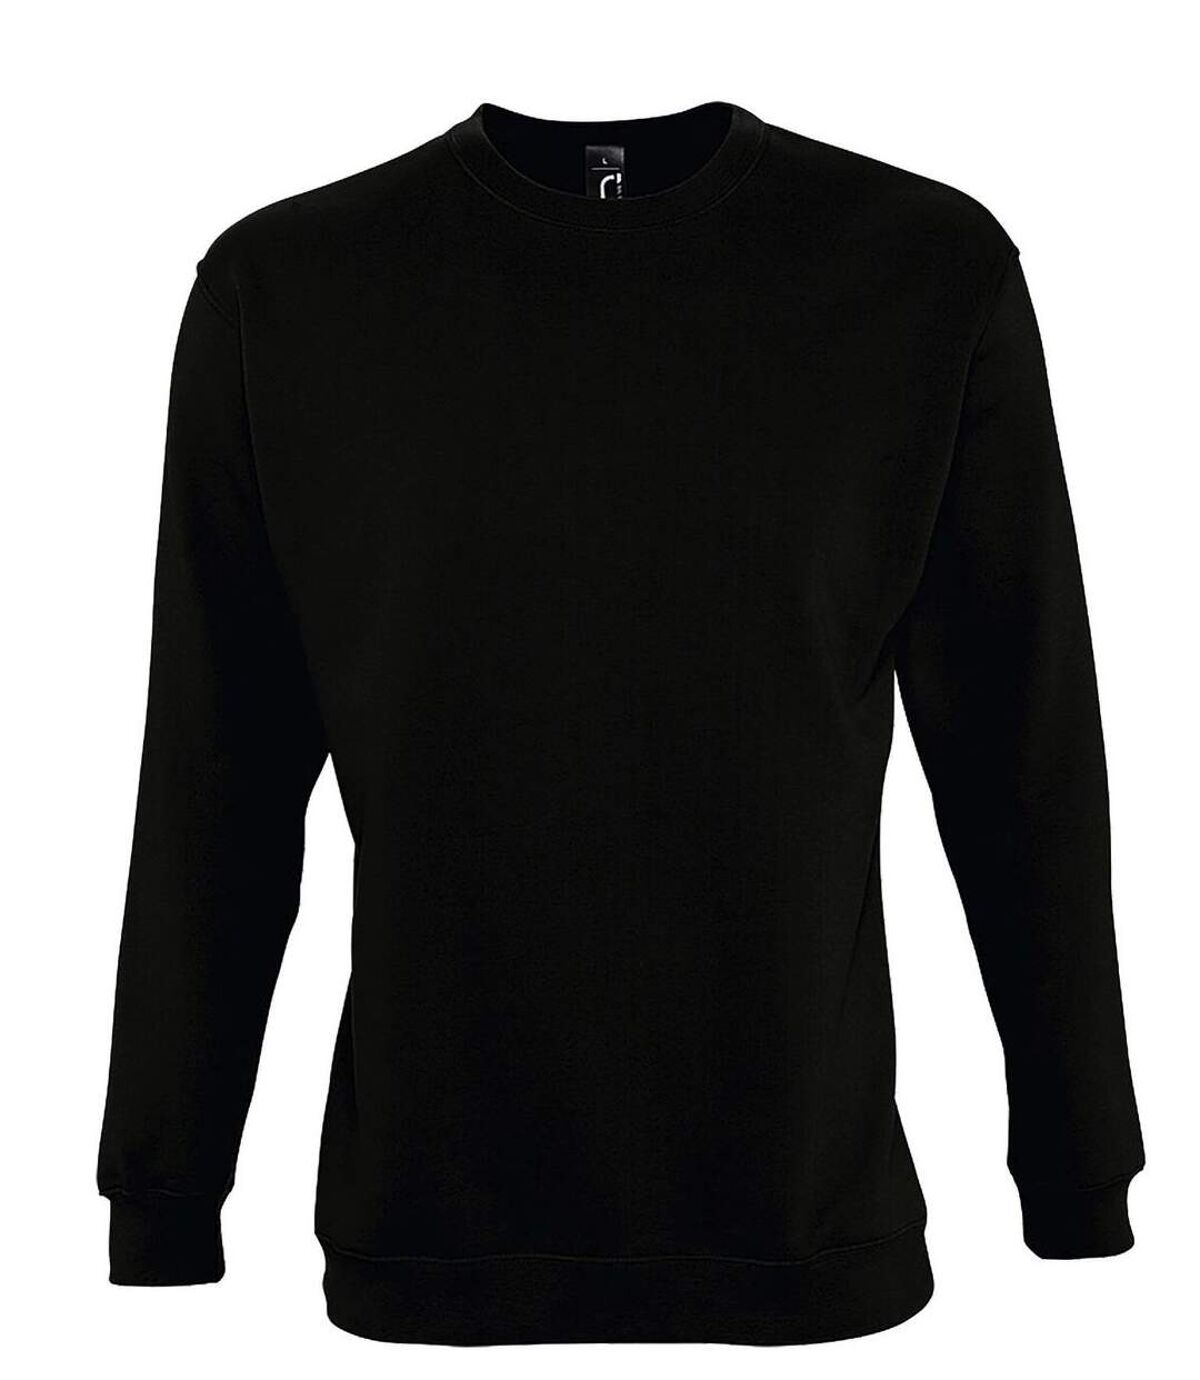 Sweat shirt classique unisexe - 13250 - noir